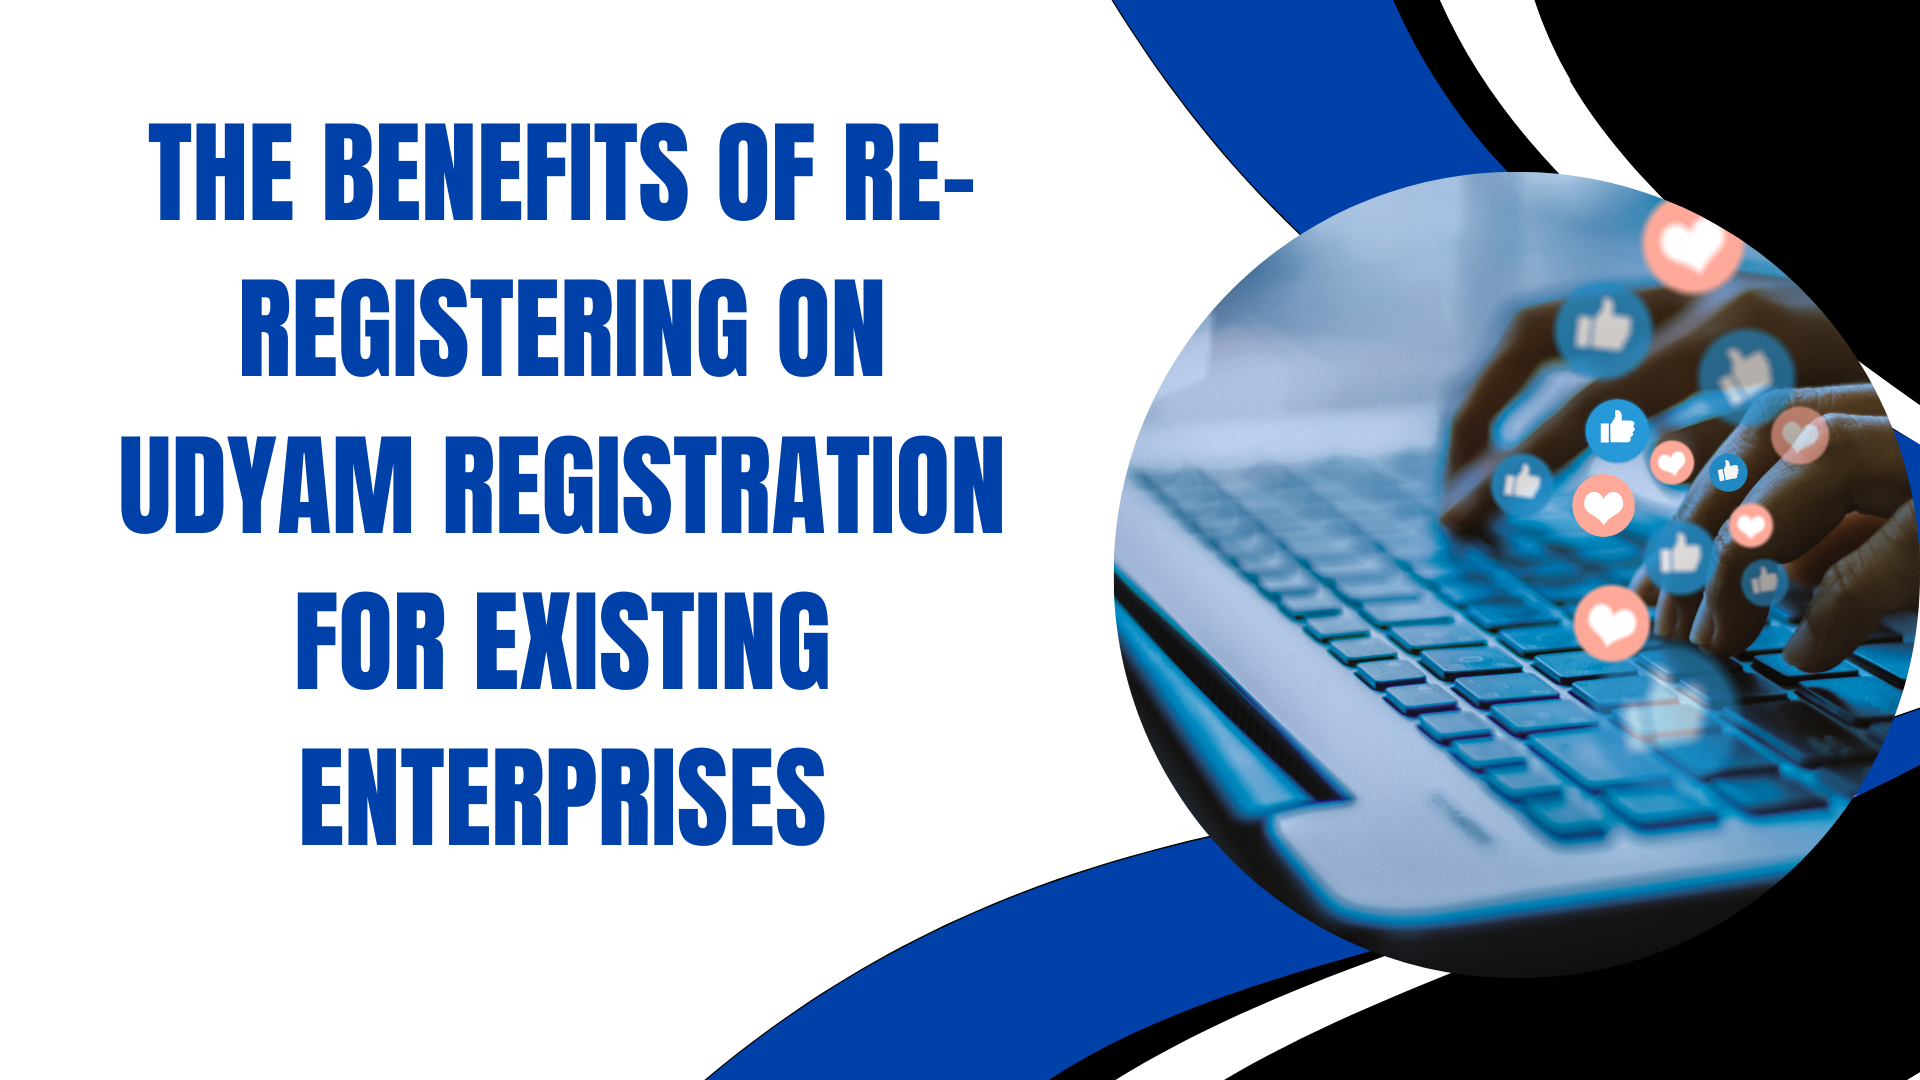 The Benefits of Re-registering on Udyam Registration for Existing Enterprises